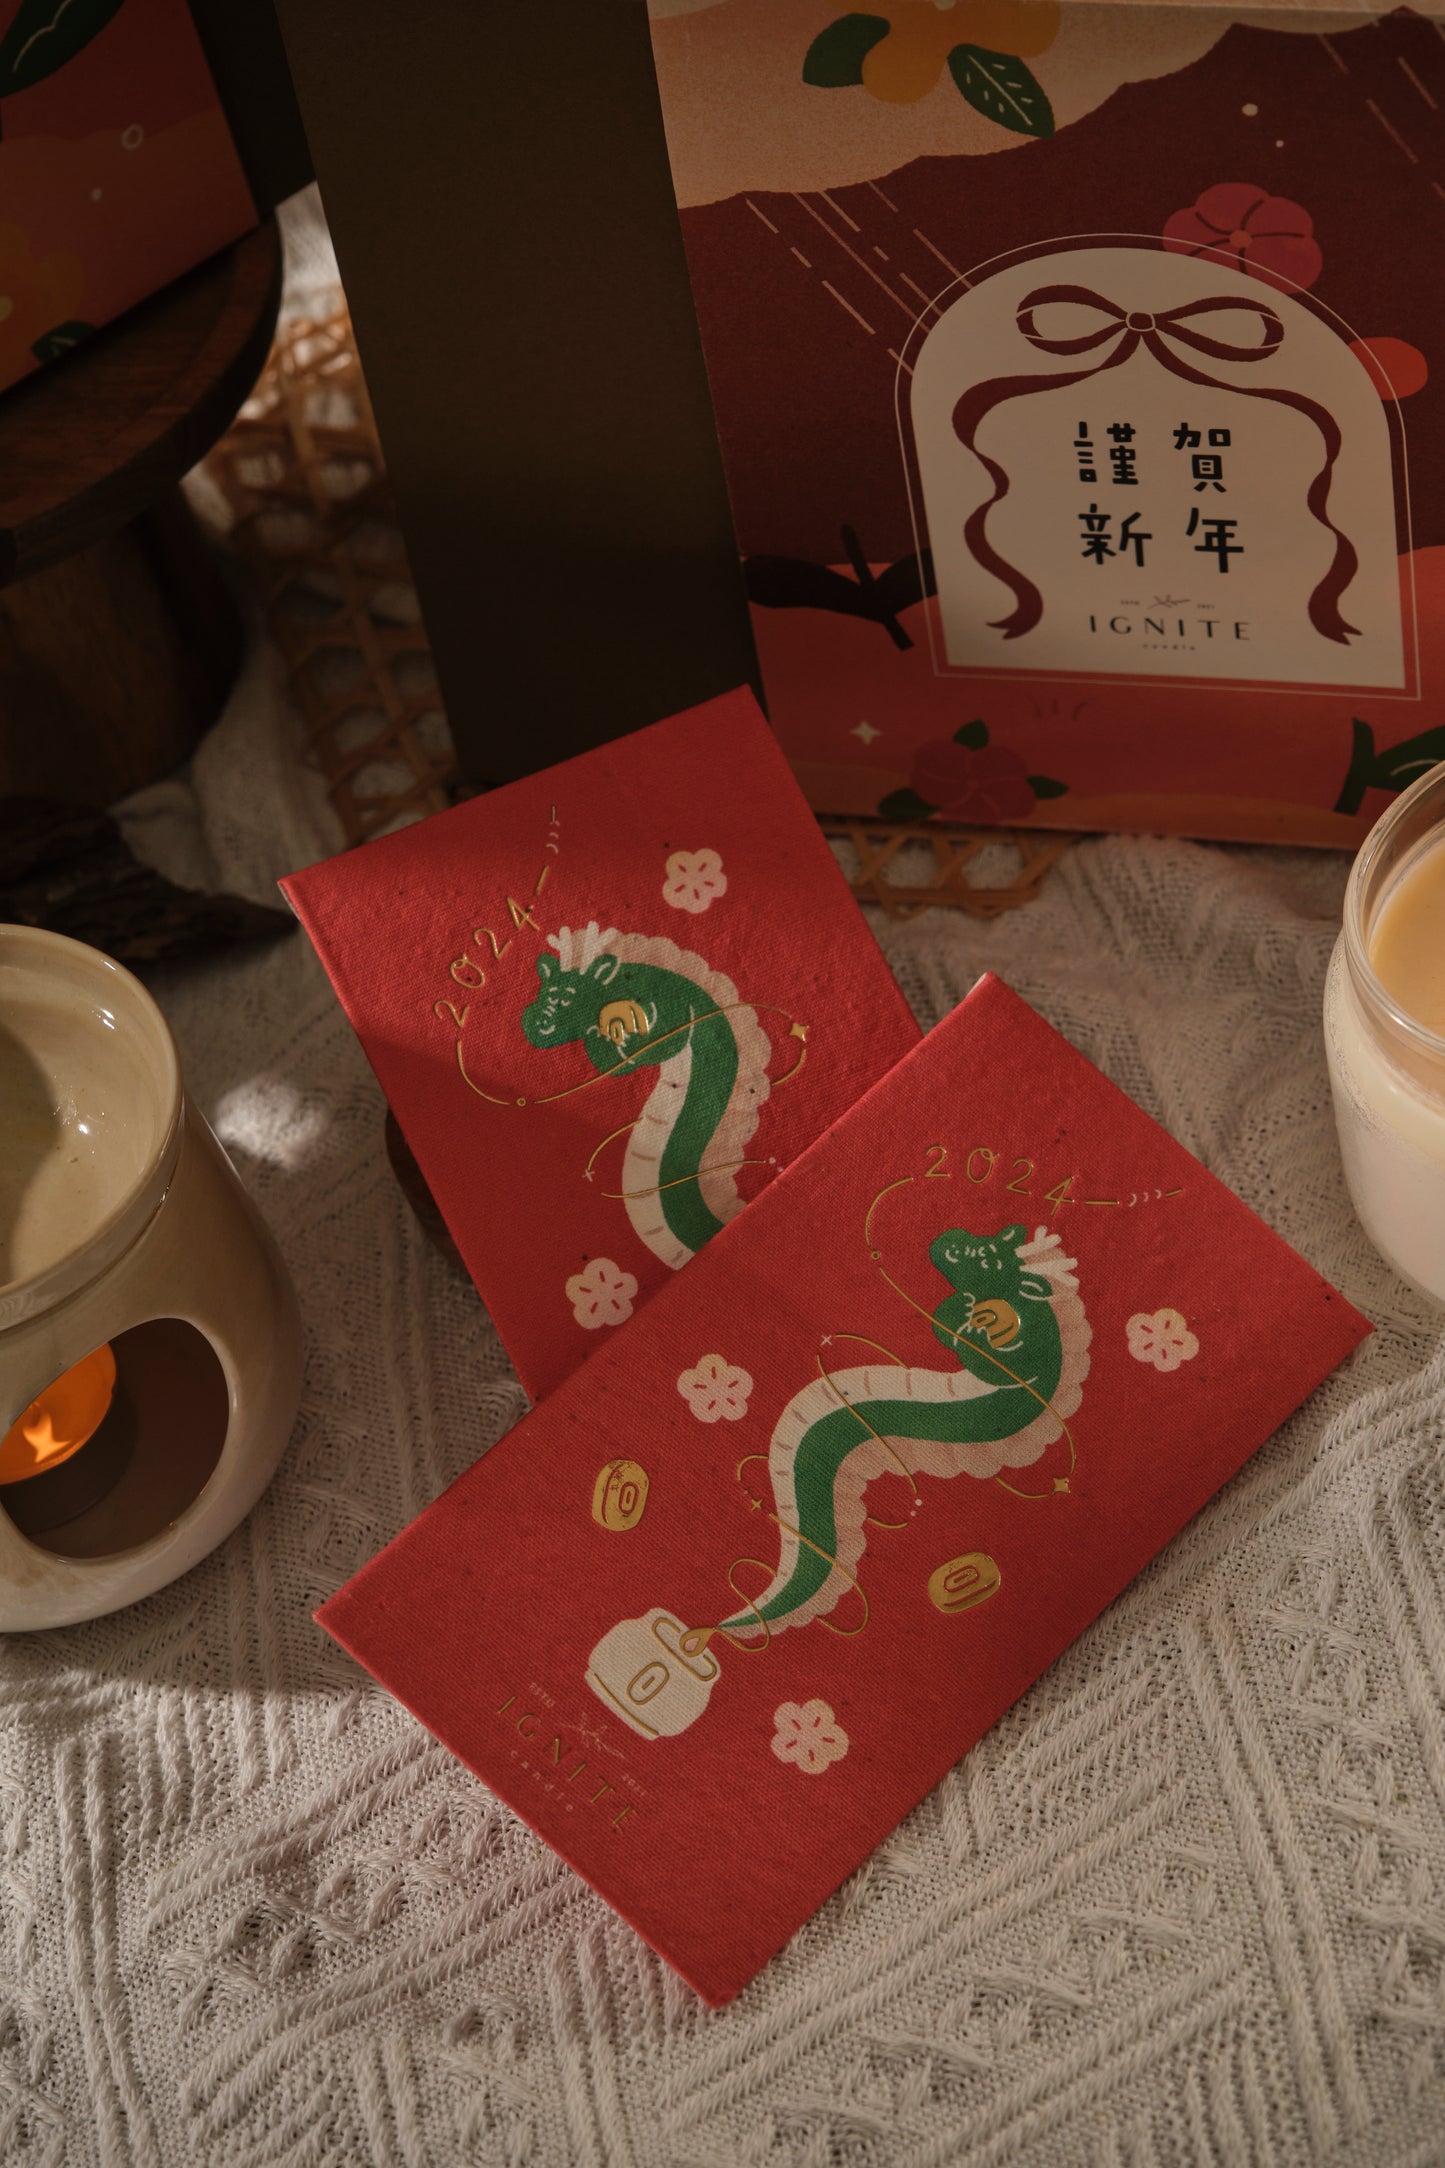 CNY aromatherapy wax melts gift set